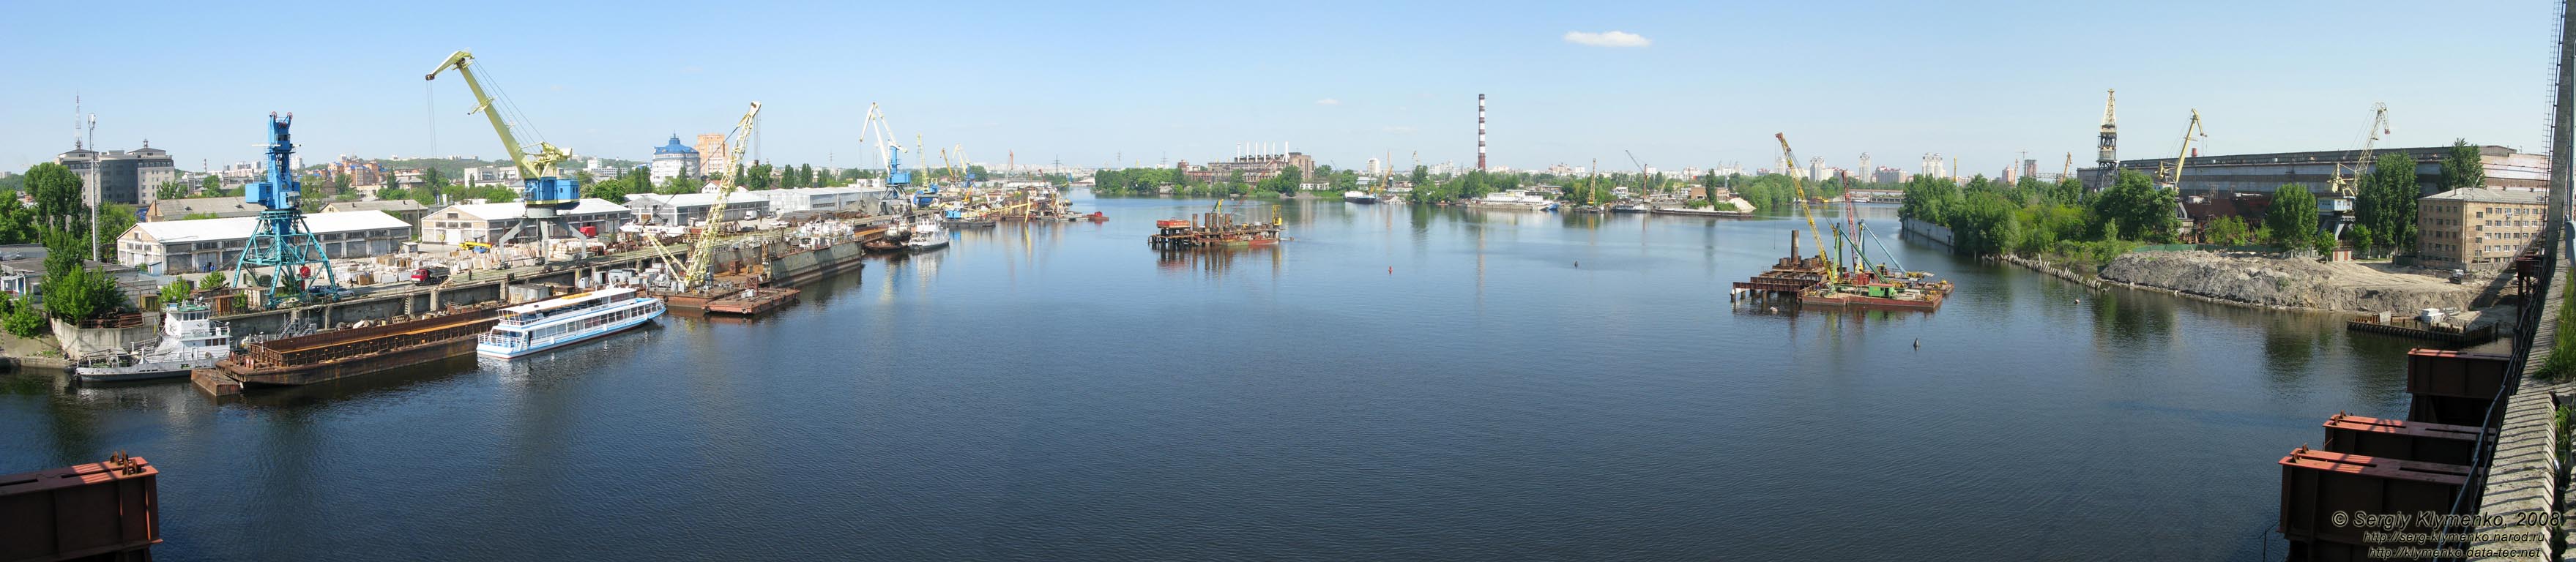 Фото Киева. Панорама (~180°) Киевской гавани со старого Рыбальского вантового моста. Строится новый мост над гаванью...